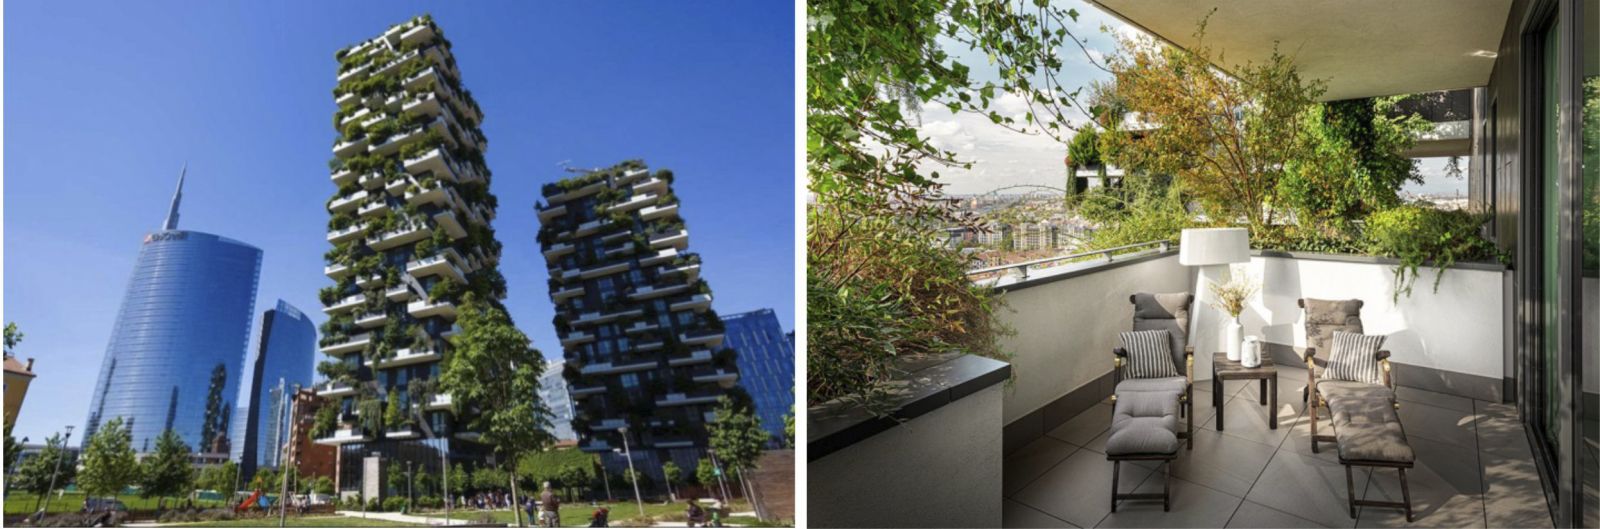 Định hướng tiến trình phát triển chung cư cao tầng xanh - sinh thái nội đô